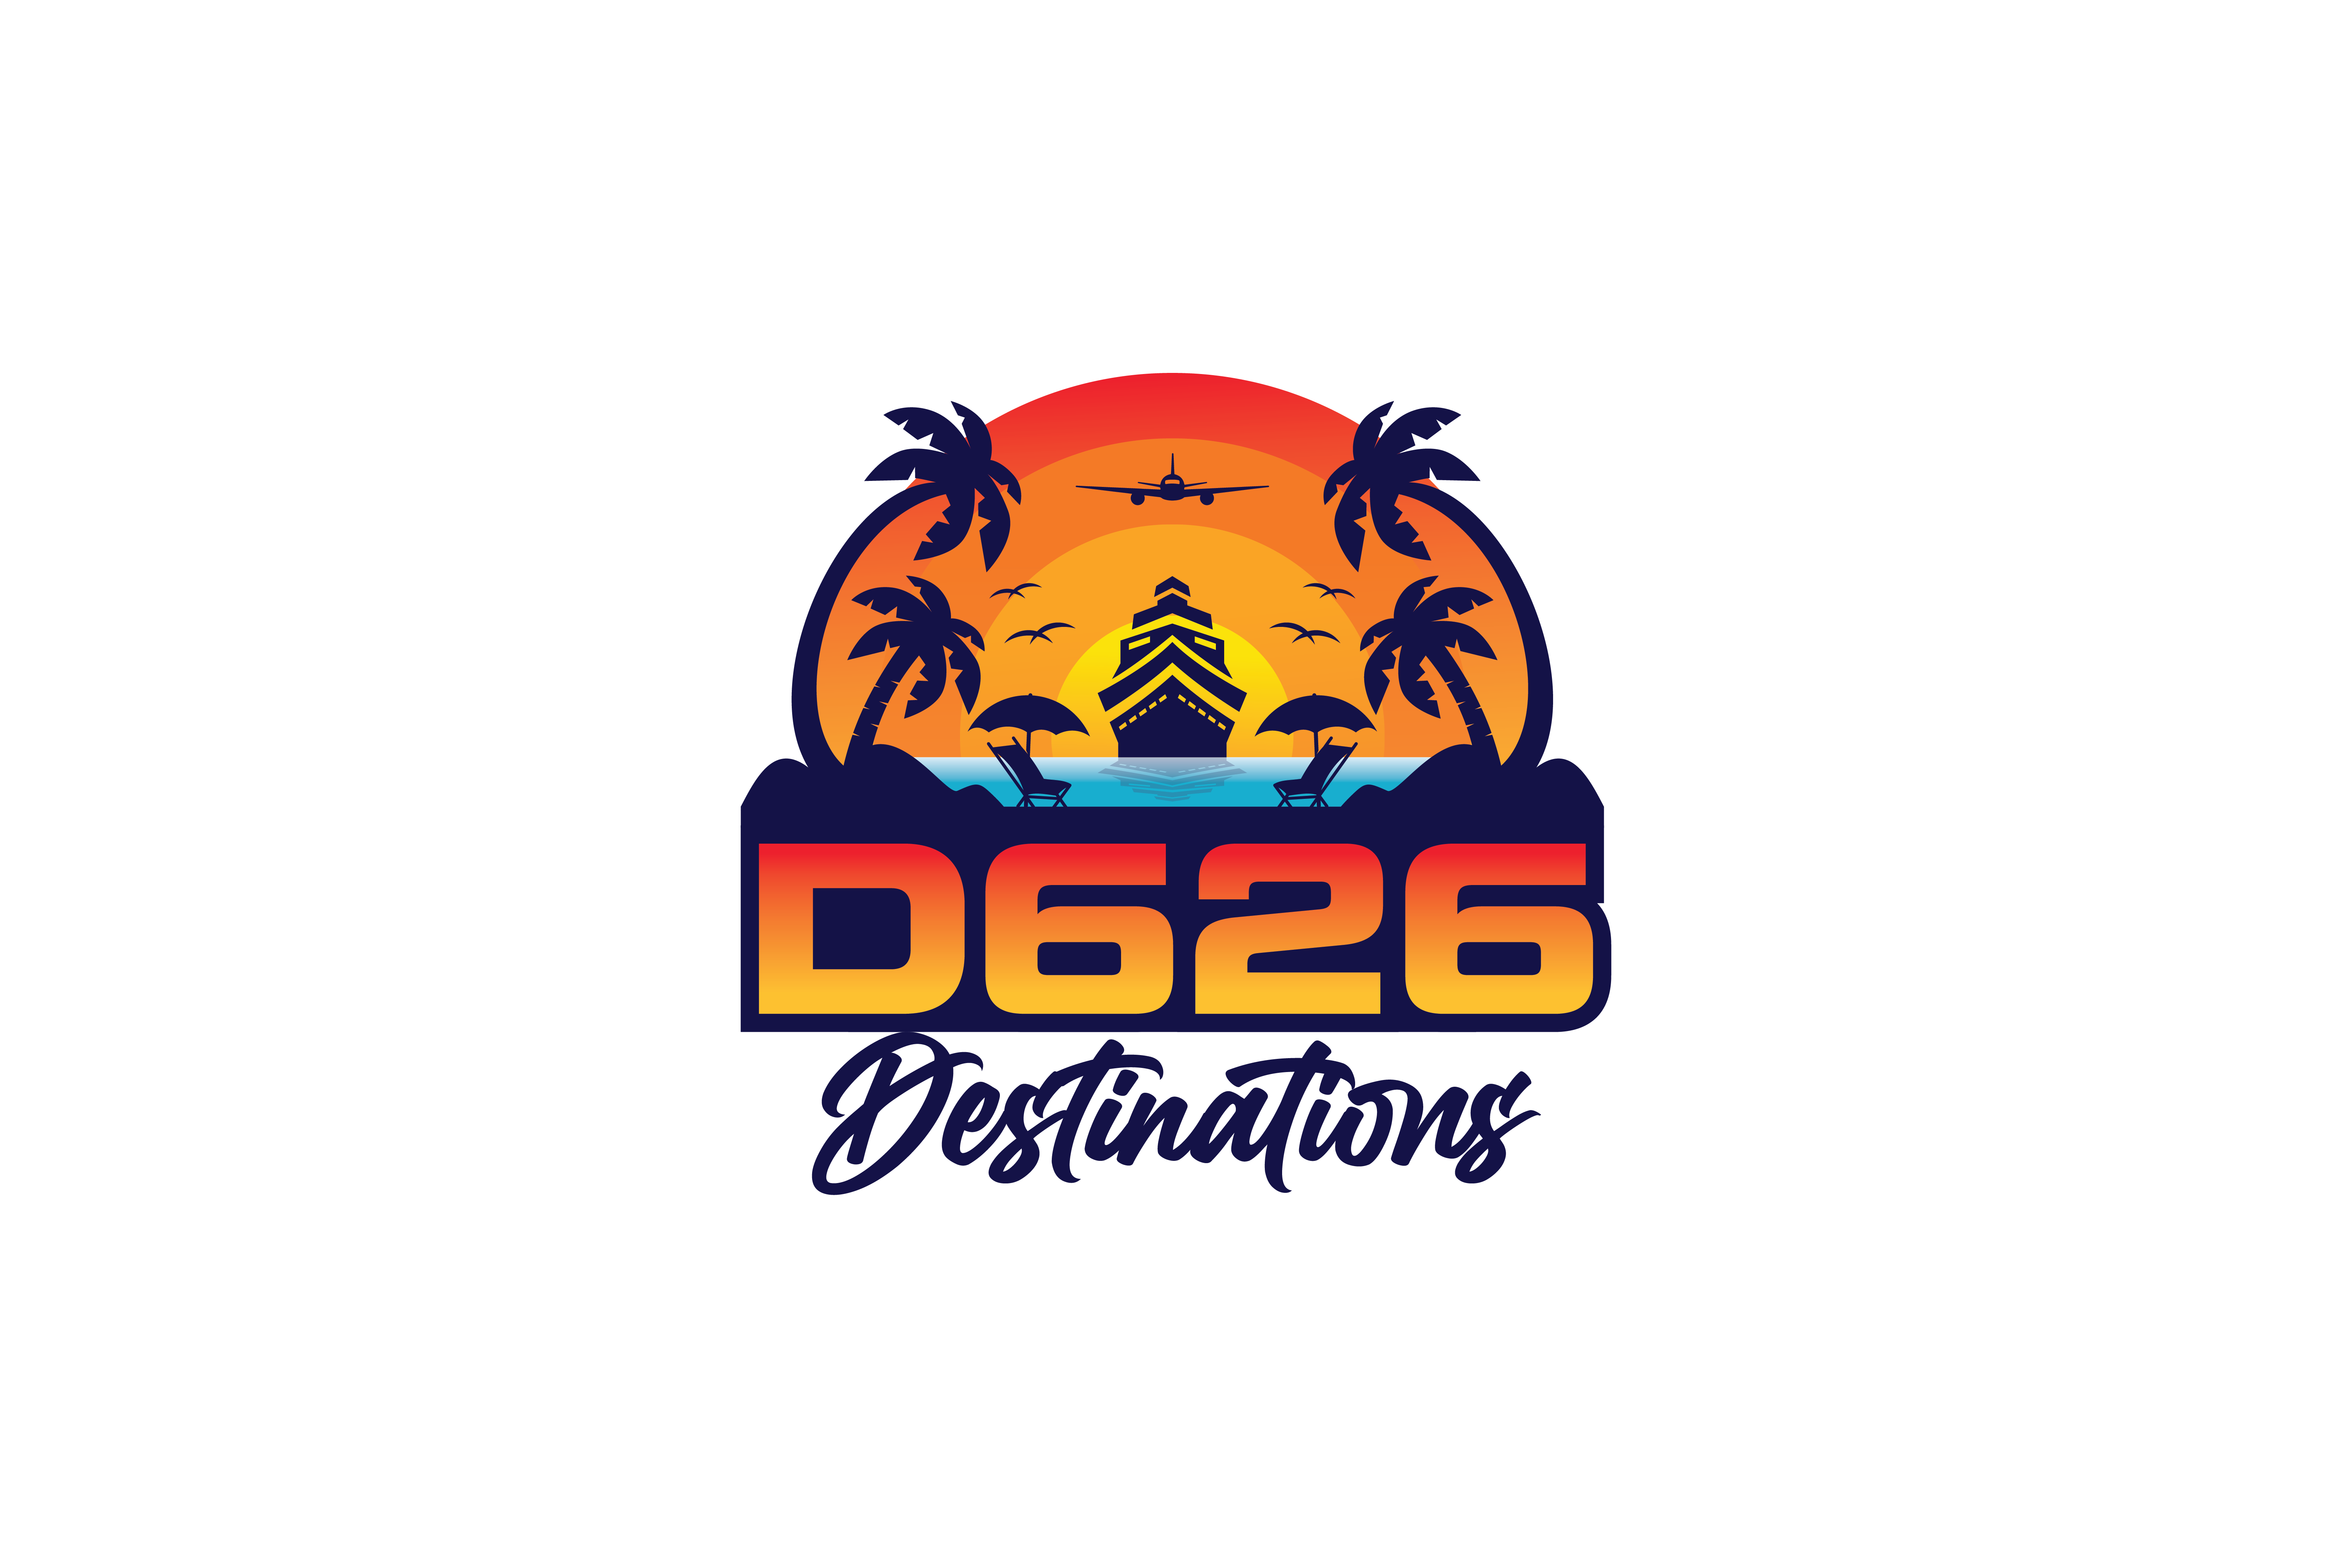 D626 Destinations